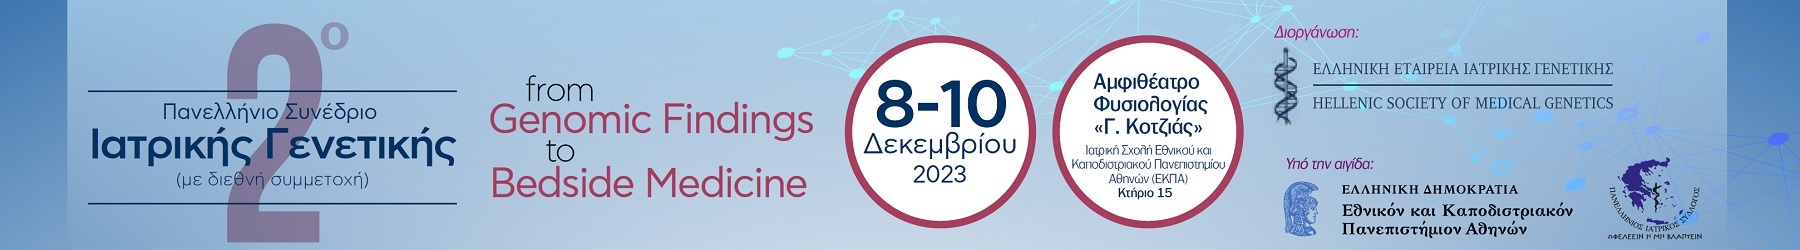 2ο Πανελλήνιο Συνέδριο Ιατρικής Γενετικής 2023